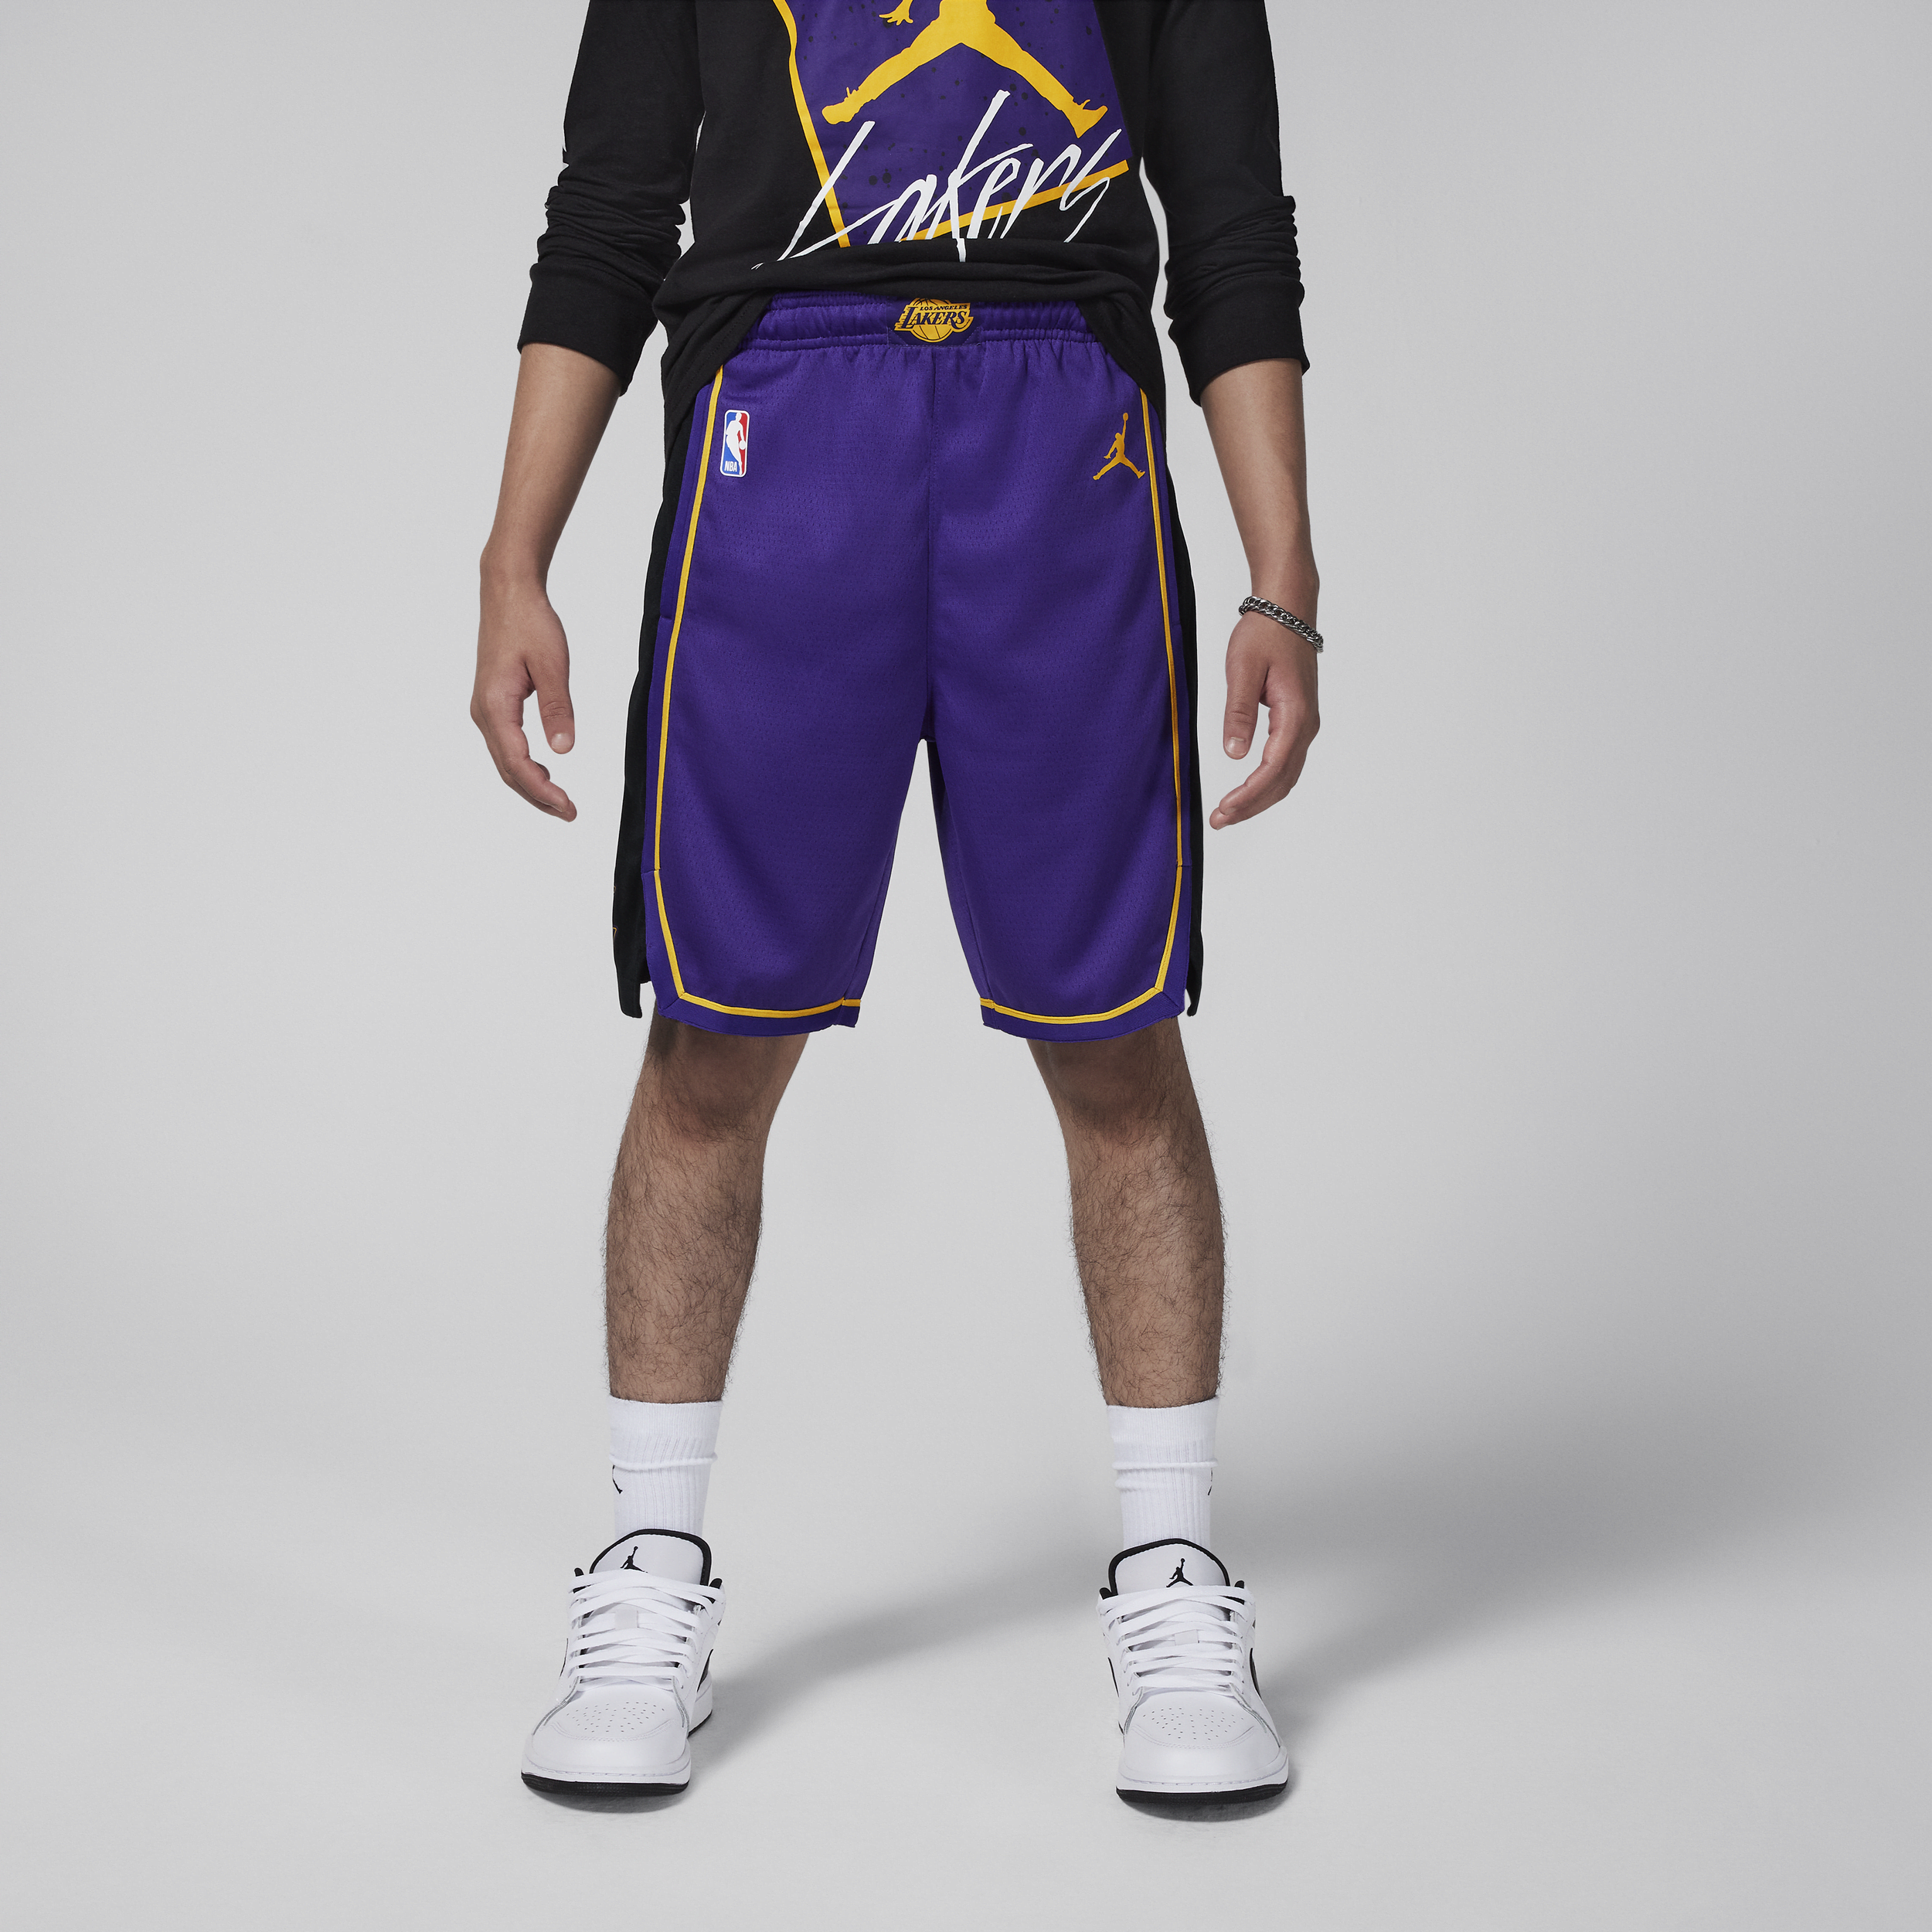 Nike Los Angeles Lakers Statement Edition Swingman Jordan NBA-basketbalshorts voor kids - Paars